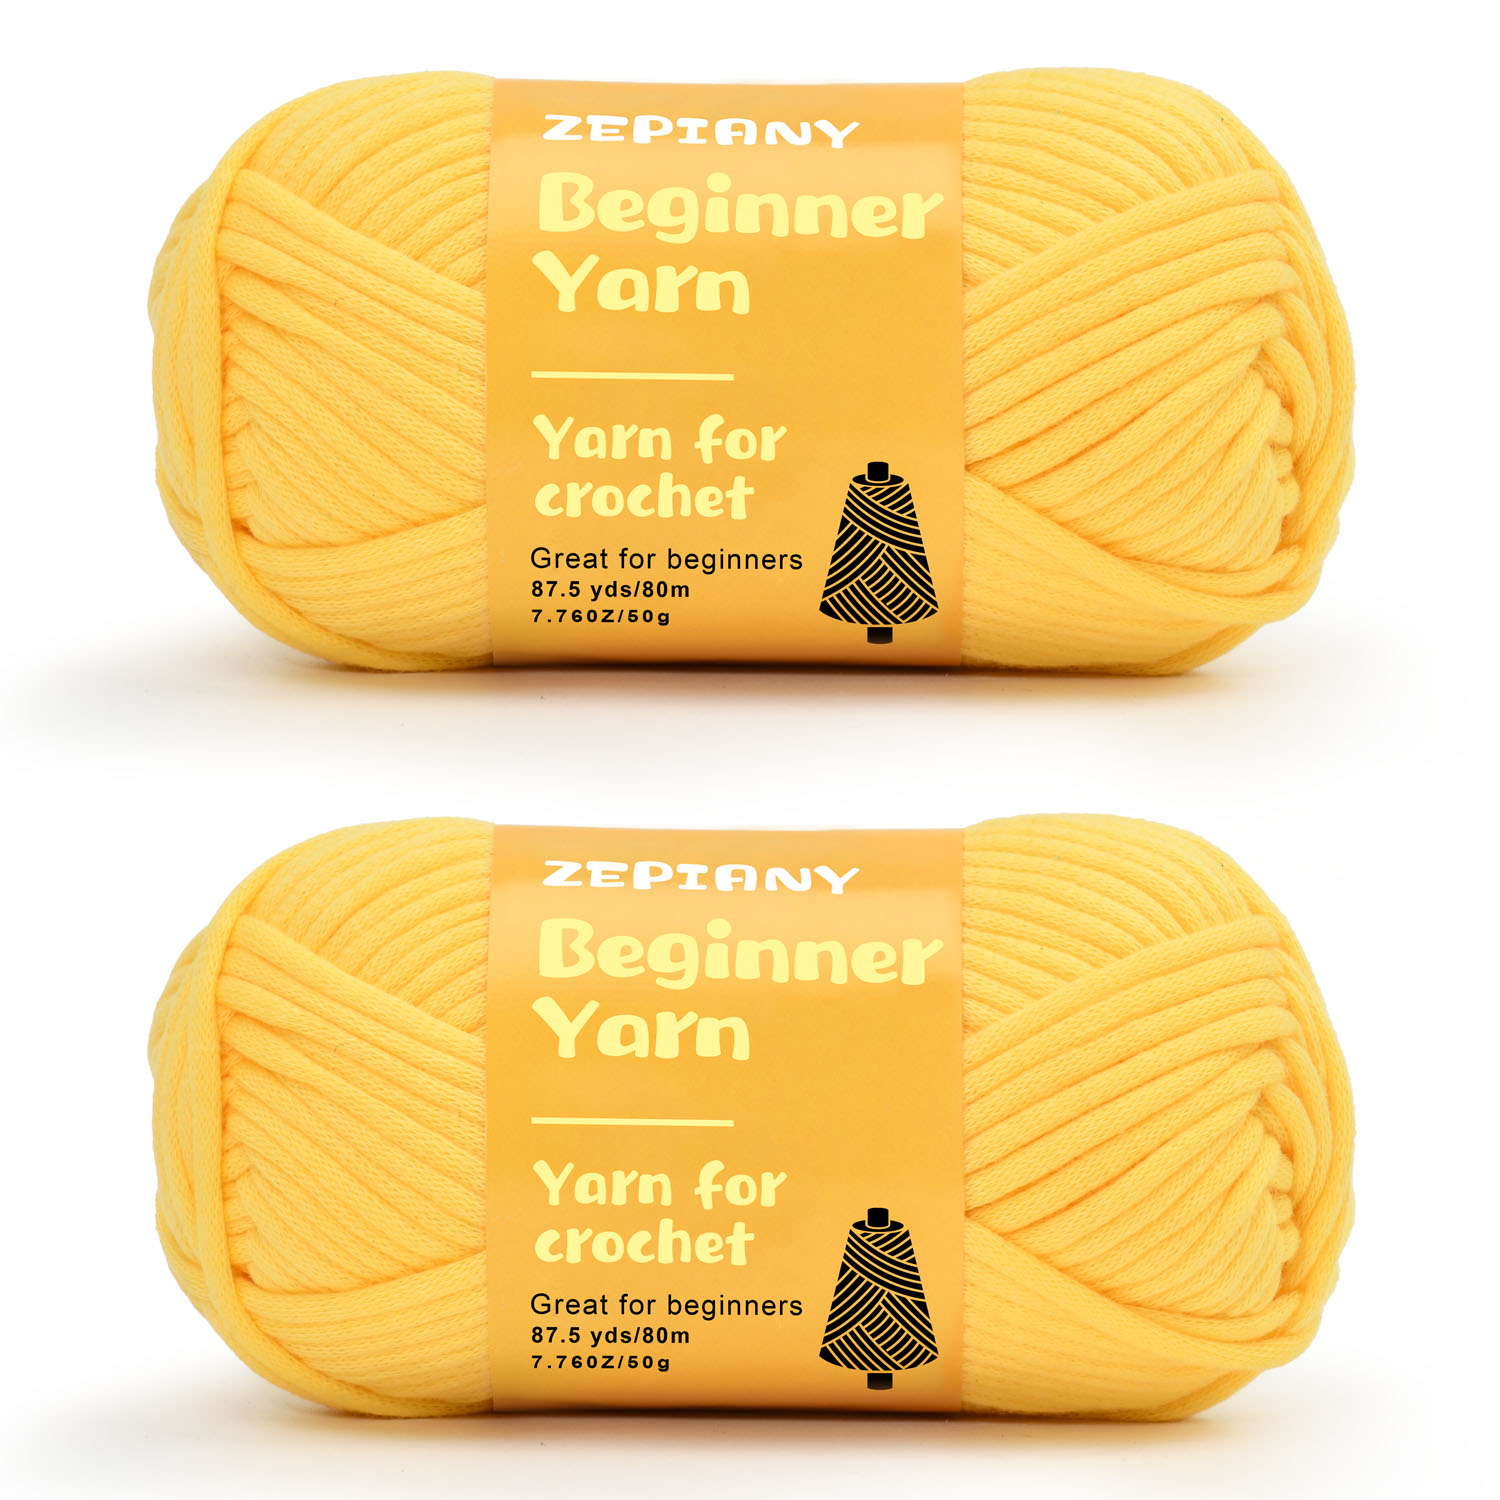 Soft Yarn for Crocheting – Crochet & Knitting Yarn, Beginner Yarn with  Easy-to-See Stitches, 24 x 50g - 2400 Yards Amigurumi Yarn, Cotton-Nylon  Blend